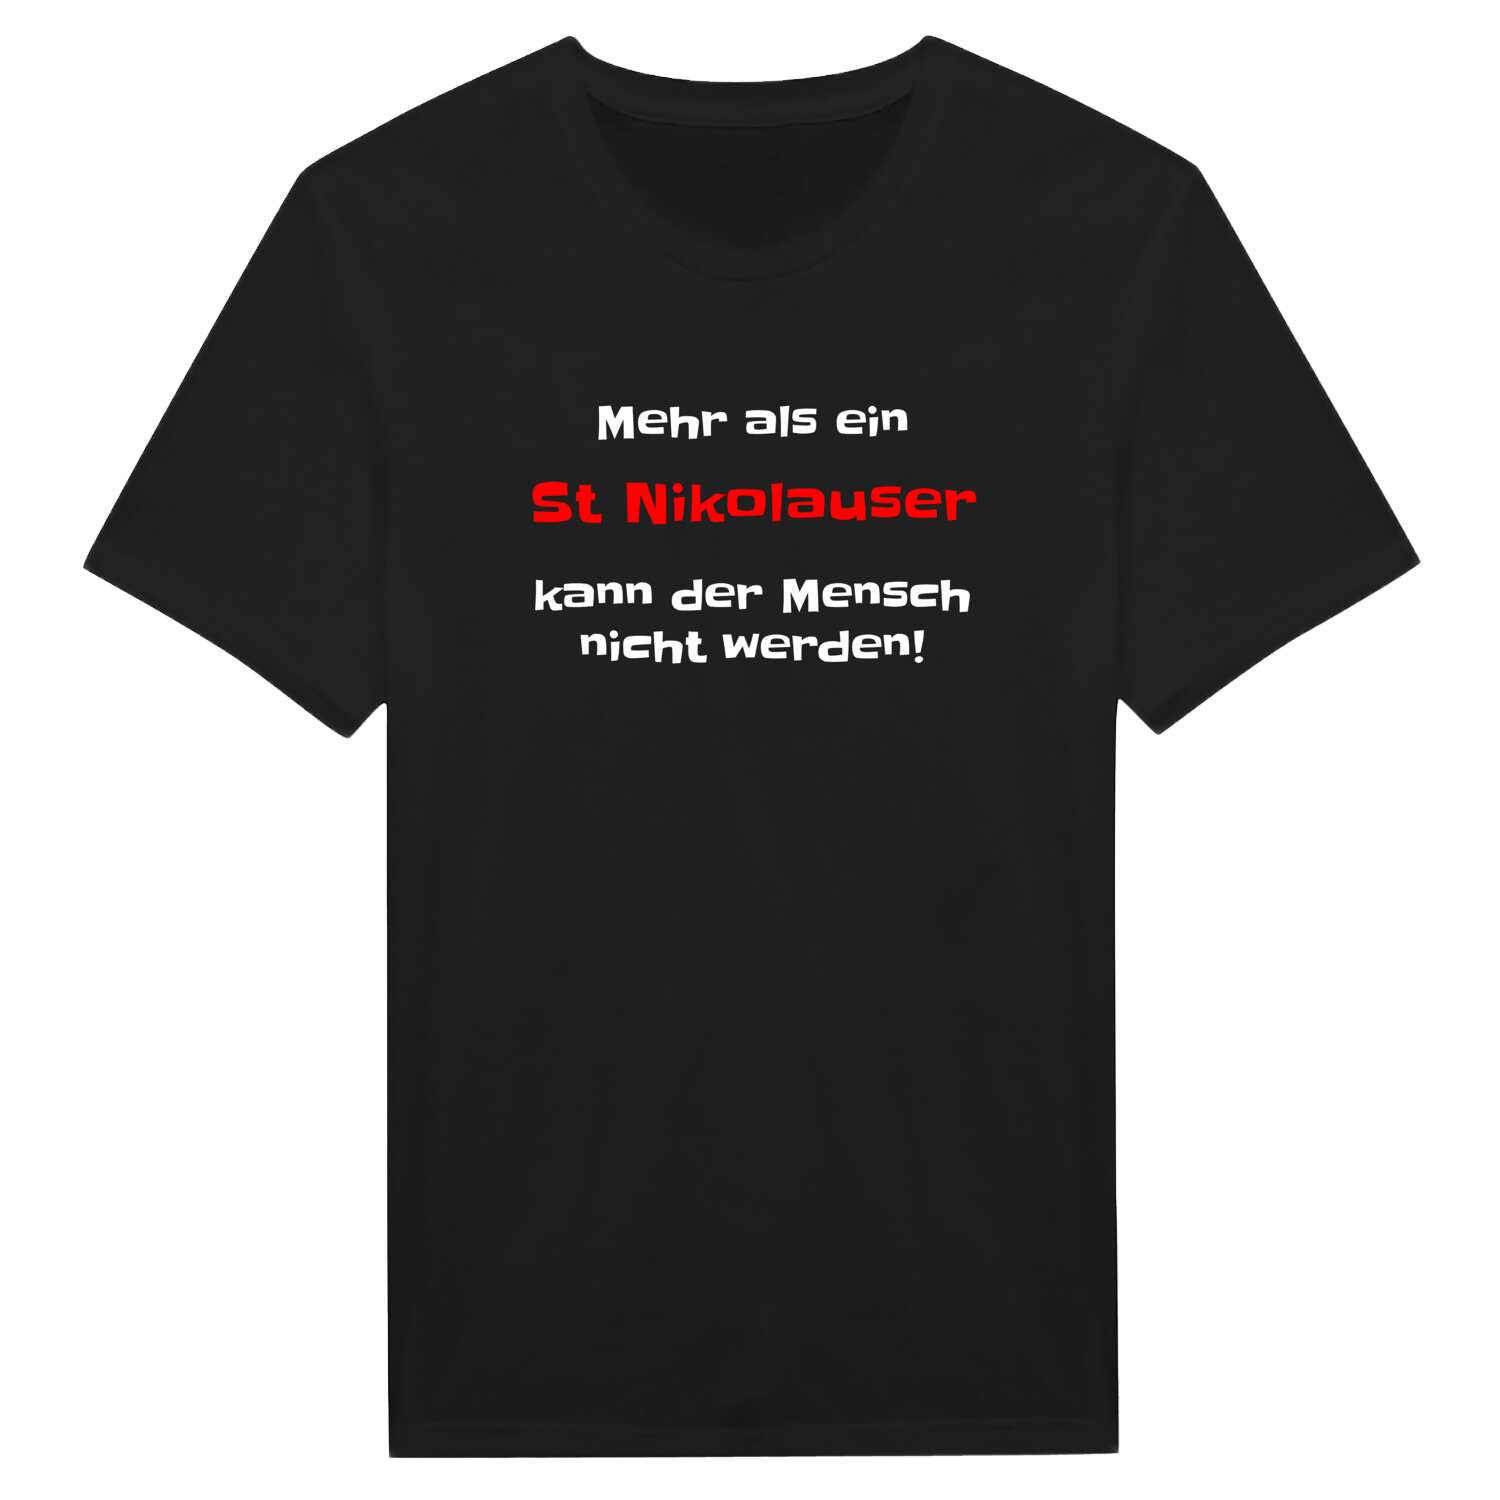 St Nikolaus T-Shirt »Mehr als ein«